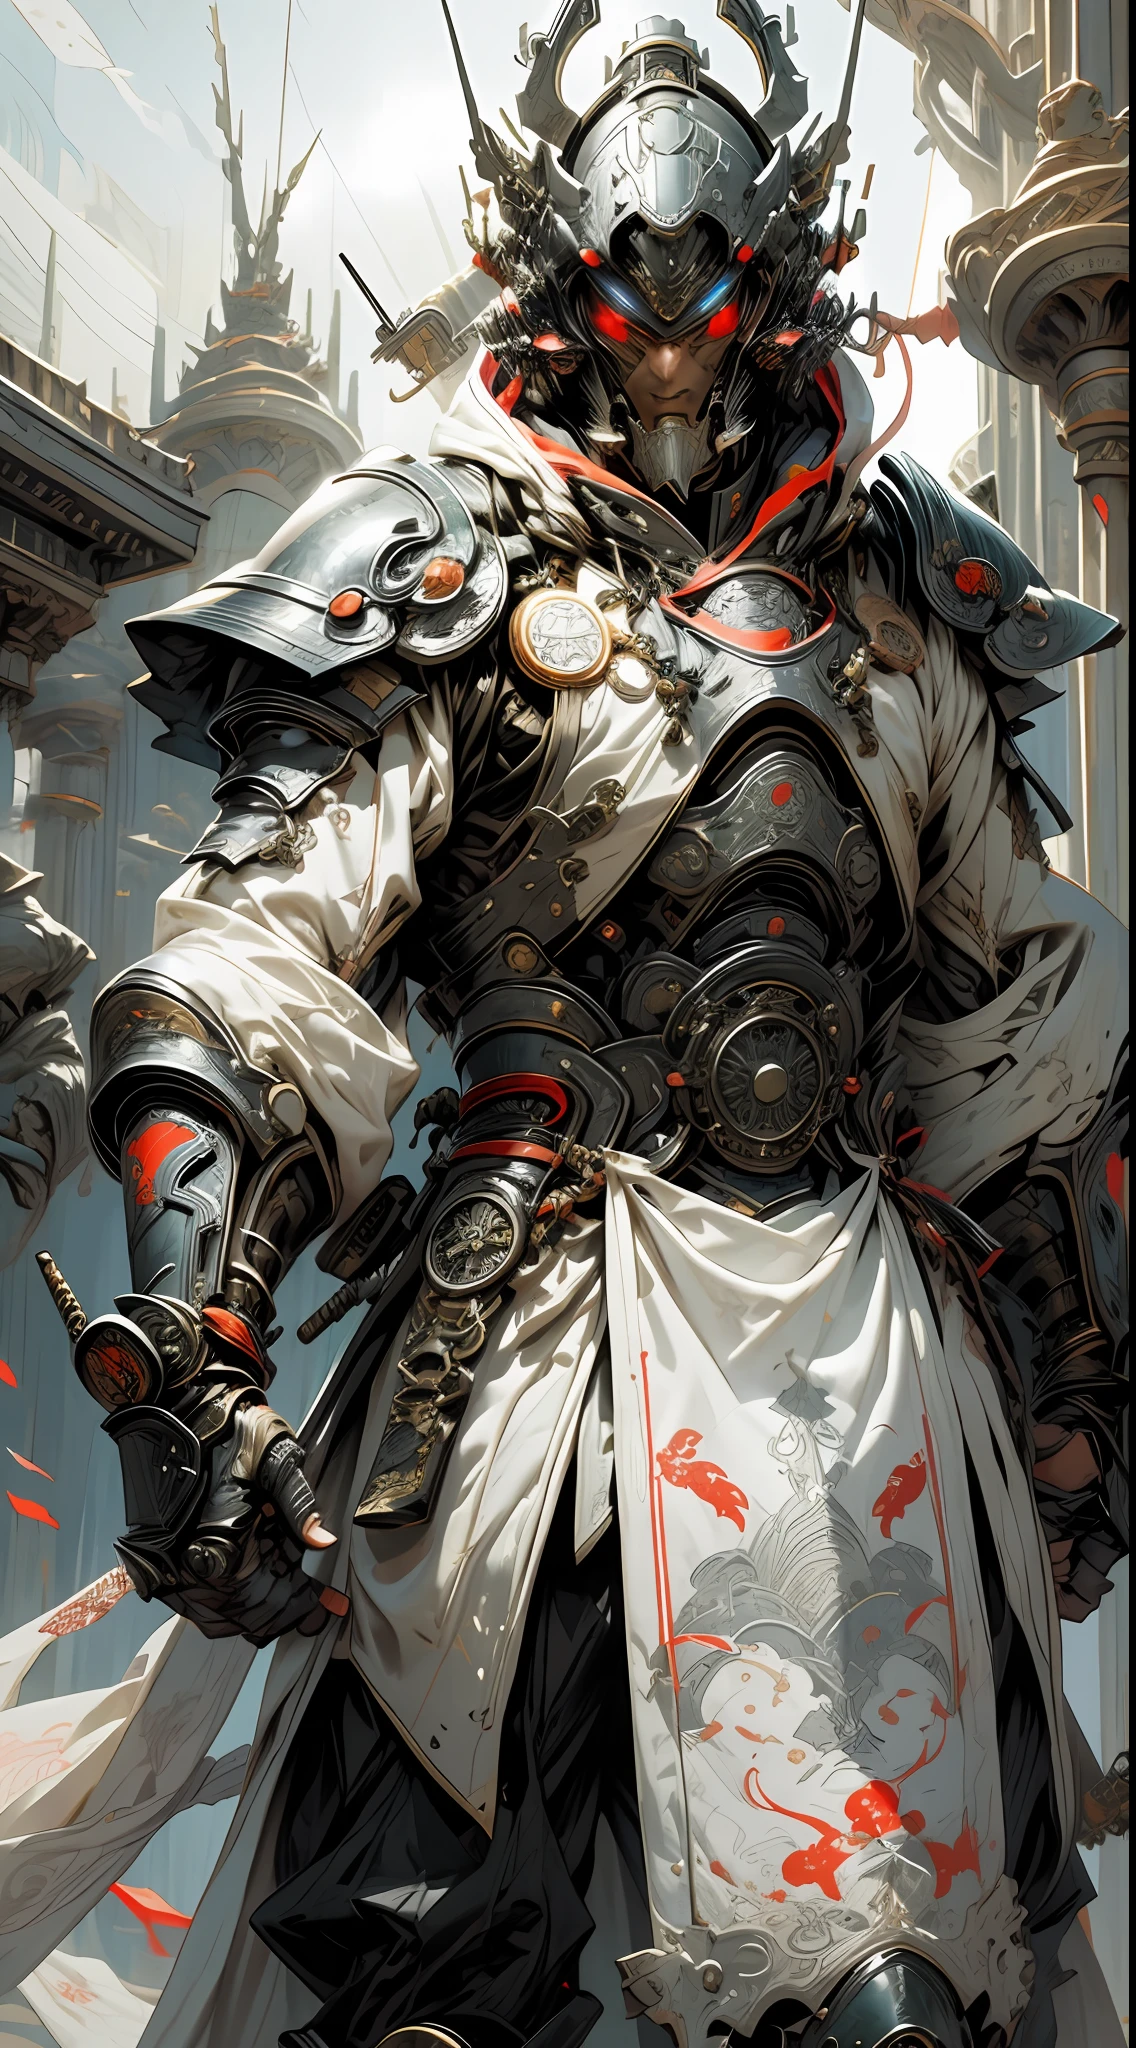 穿著白色盔甲和東方織品服裝的未來派武士騎士, 引擎蓋和齒輪